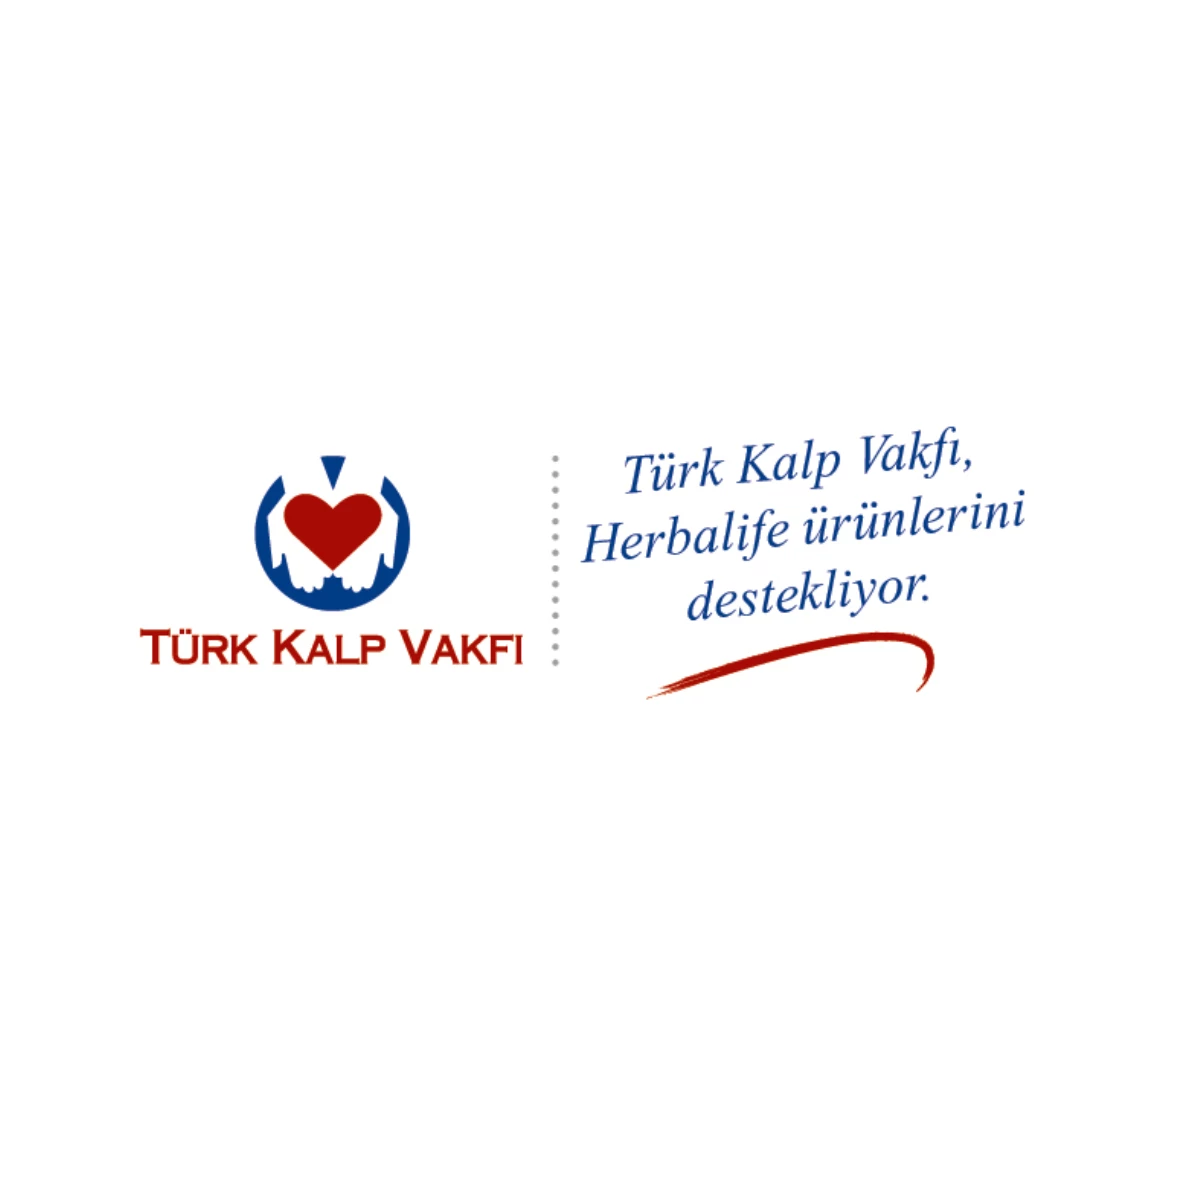 Herbalife\'ın Kalbi, Türk Kalp Vakfı ile Birlikte Atıyor